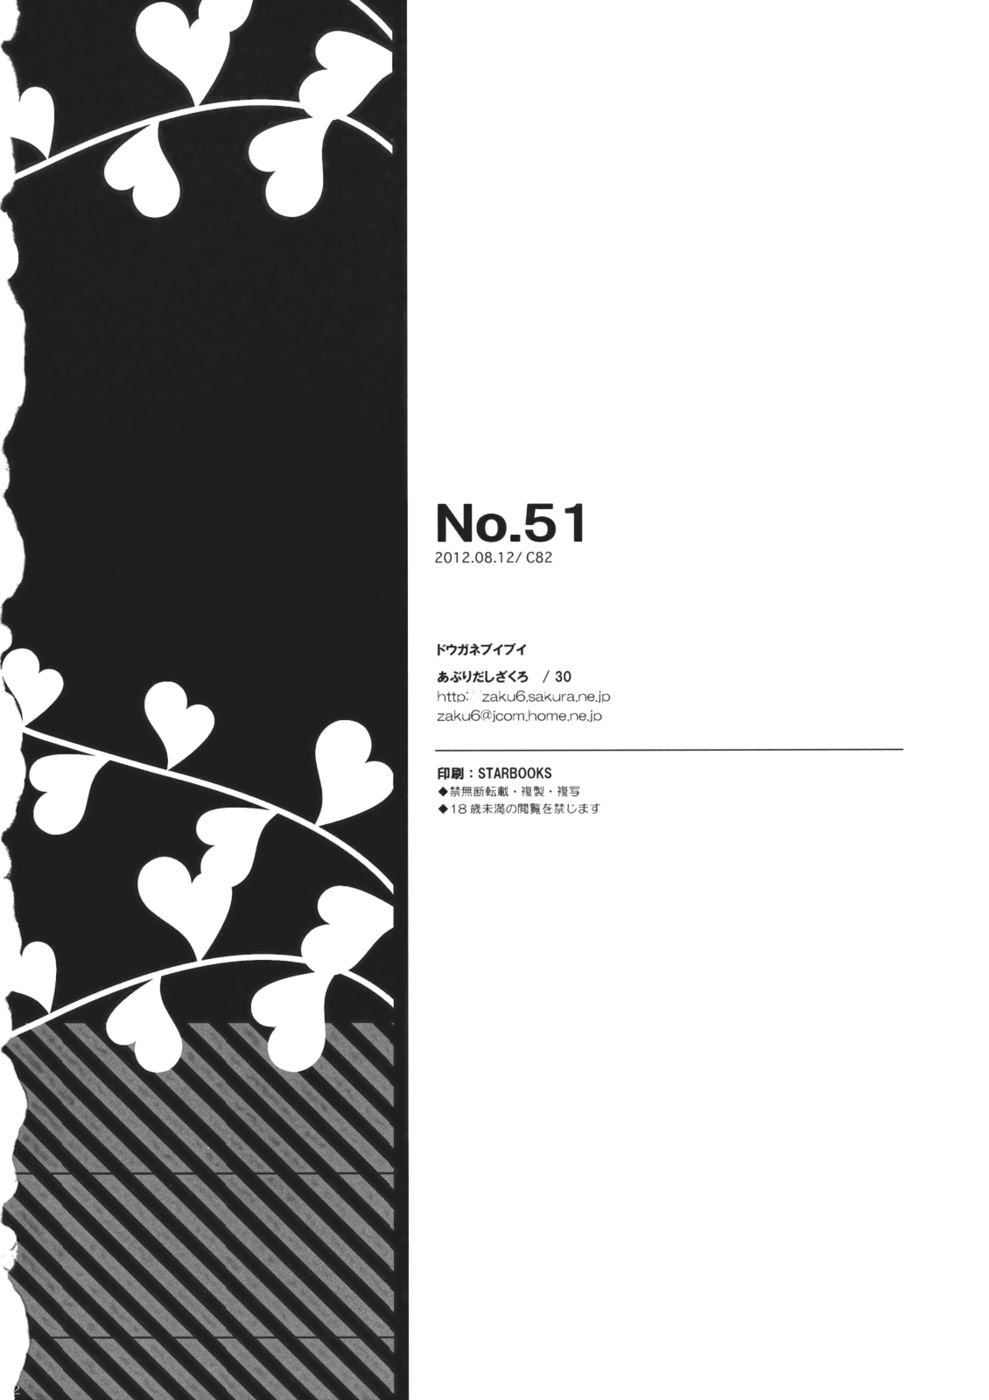 No.51